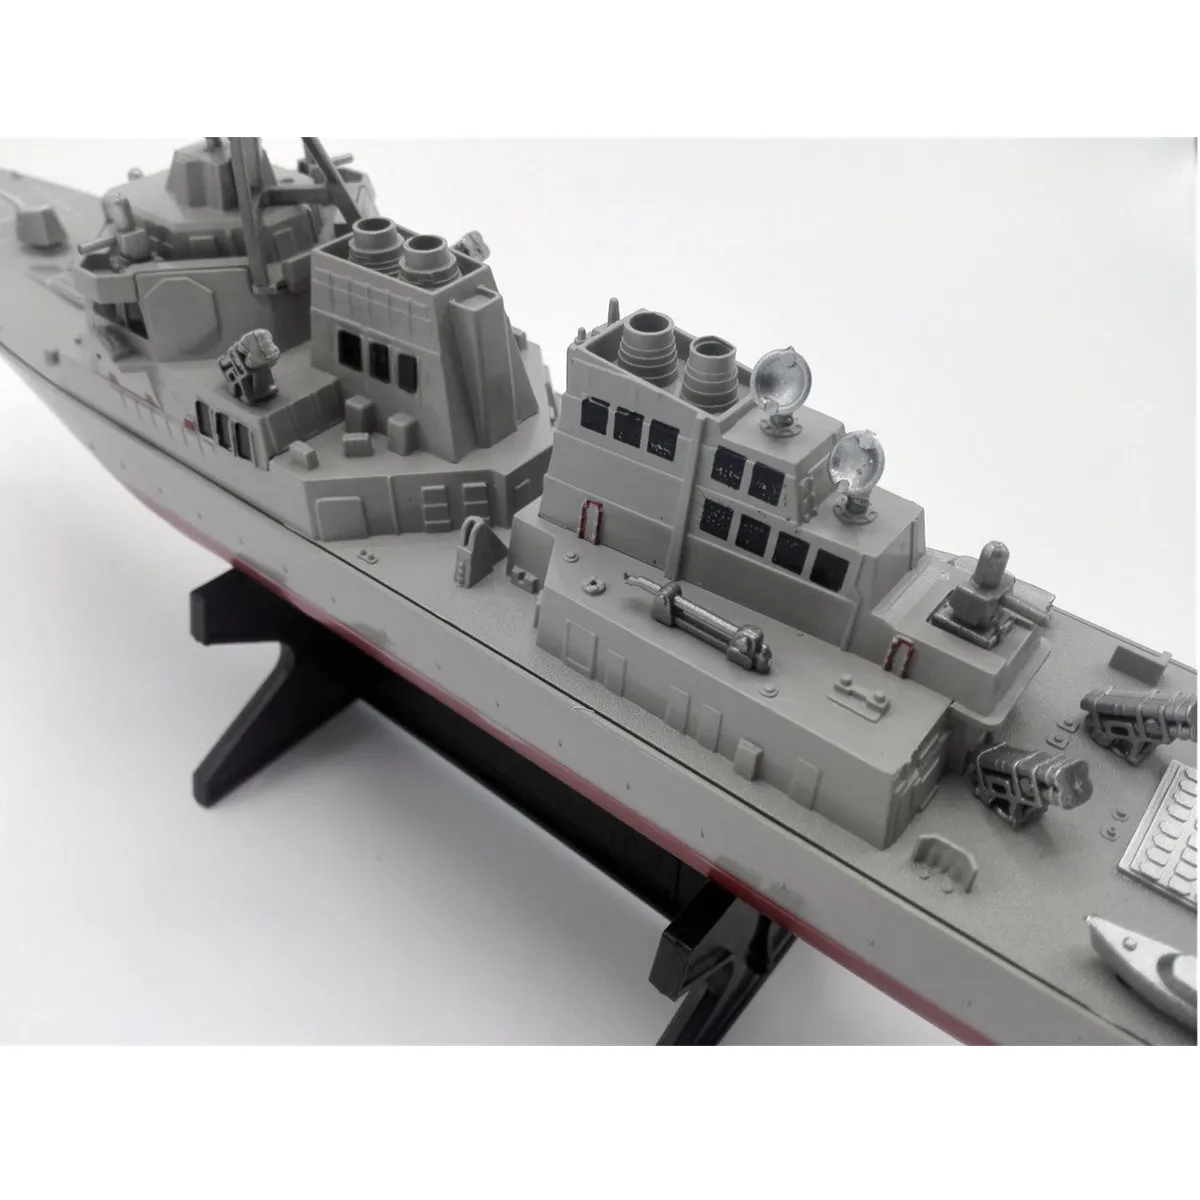 Армейский управляемый ракетный эсминец модель корабля статические игрушки с дисплеем Стенд военный корабль модель DIY Развивающие игрушки хобби детский подарок